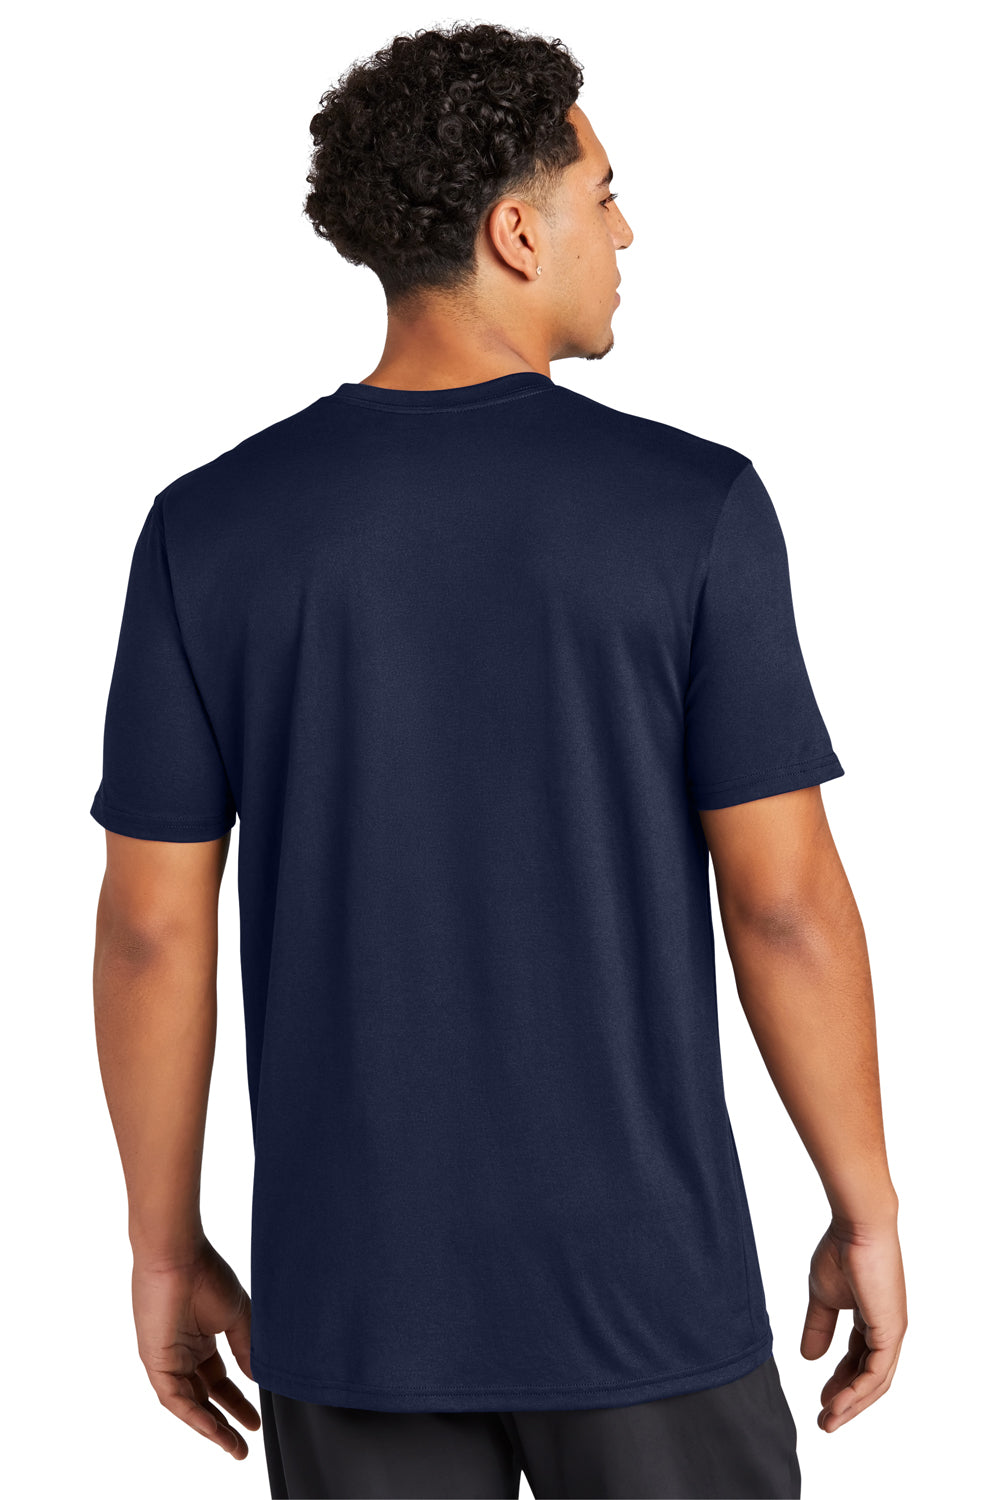 Sport-Tek ST760 Echo Short Sleeve Crewneck T-Shirt True Navy Blue Back